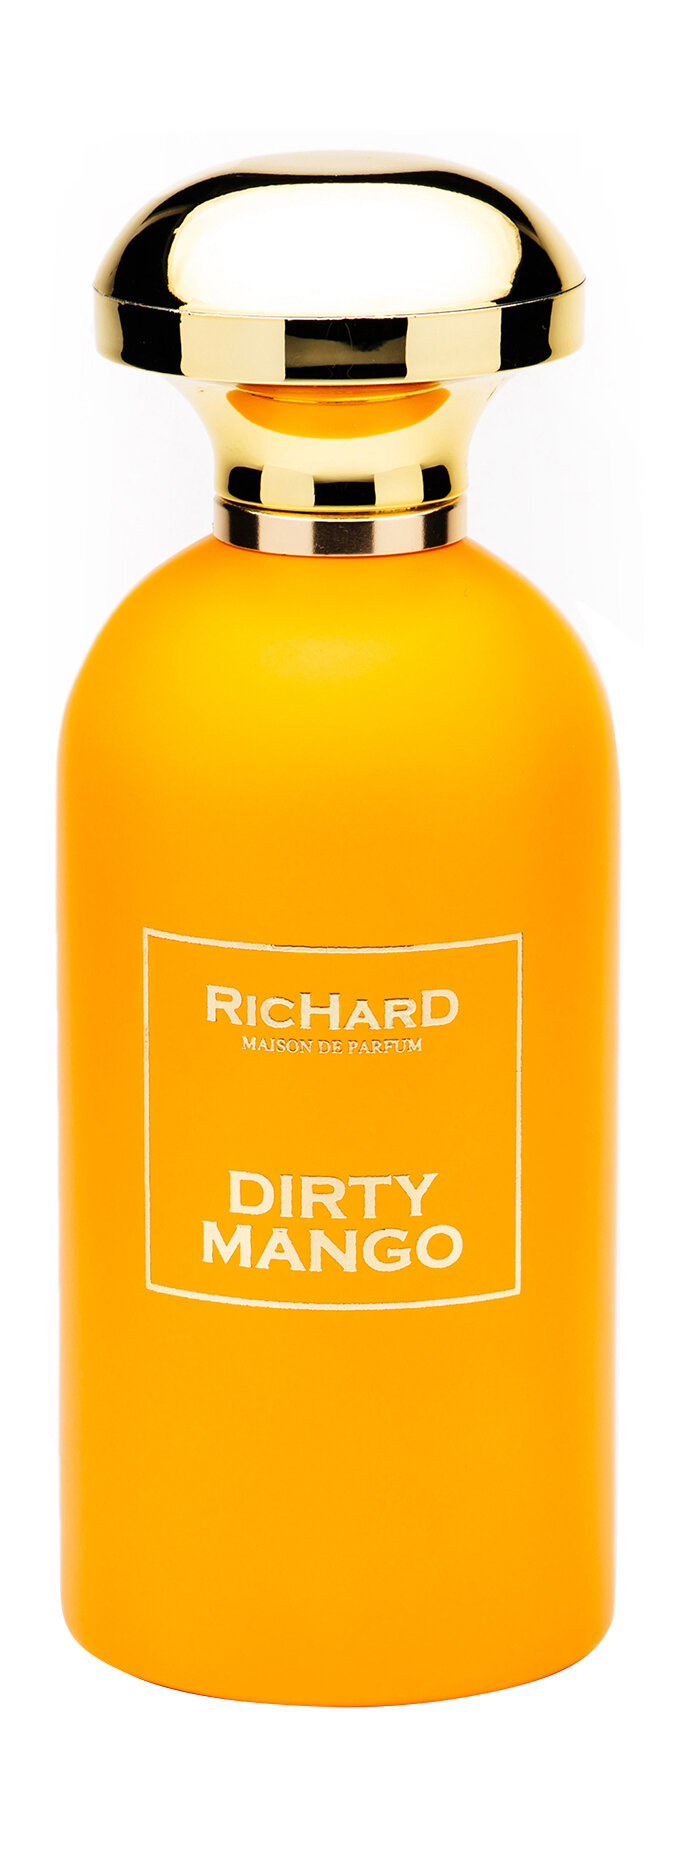 RICHARD MAISON DE PARFUM Dirty Mango Парфюмерная вода унисекс, 100 мл